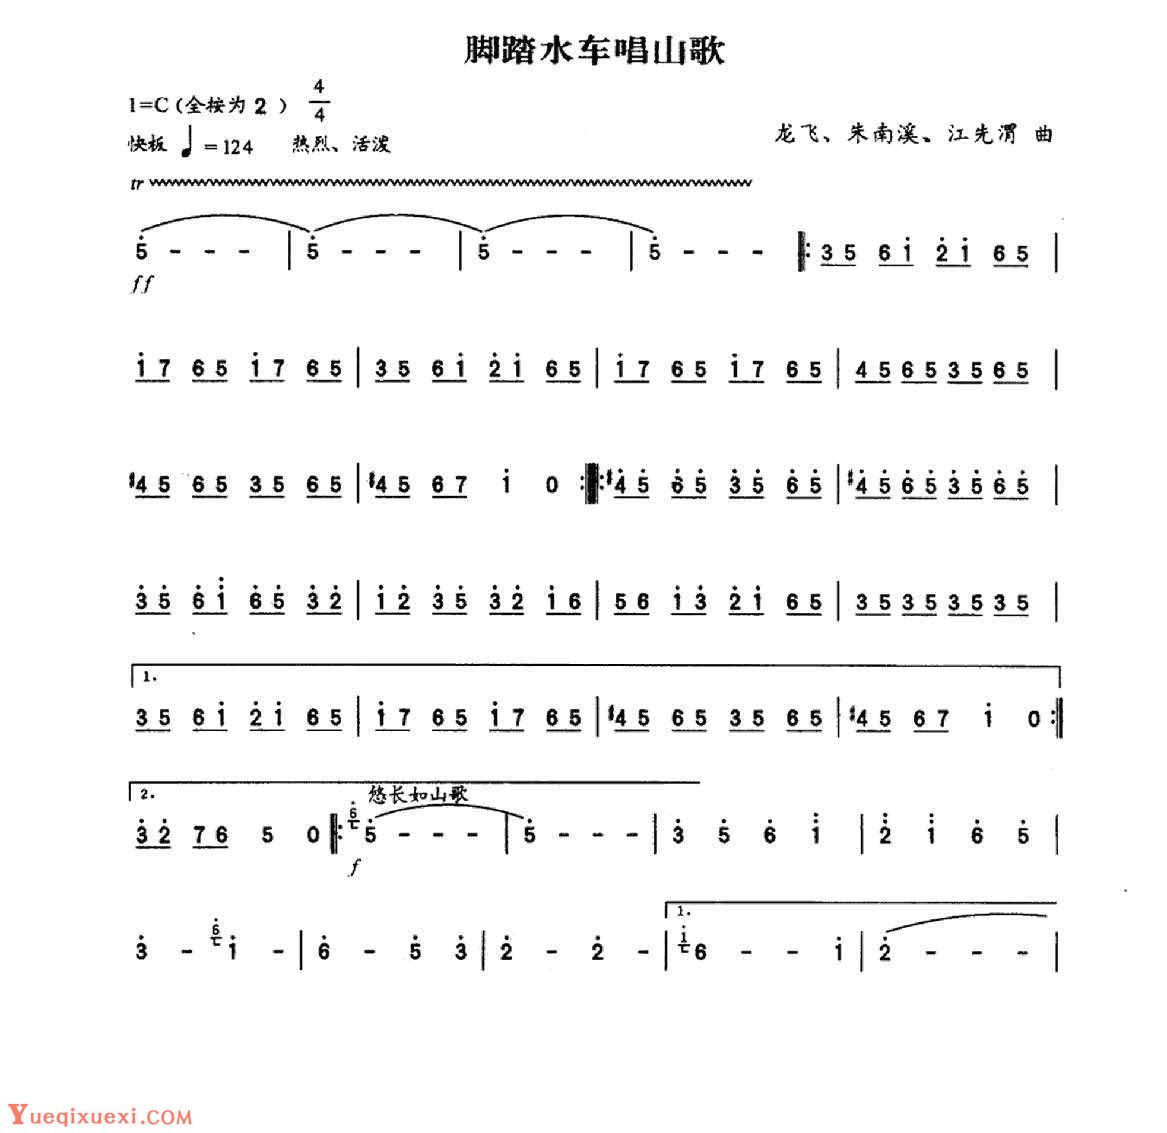 中国笛子名曲《脚踏水车唱山歌》龙飞、朱南溪、霍伟曲